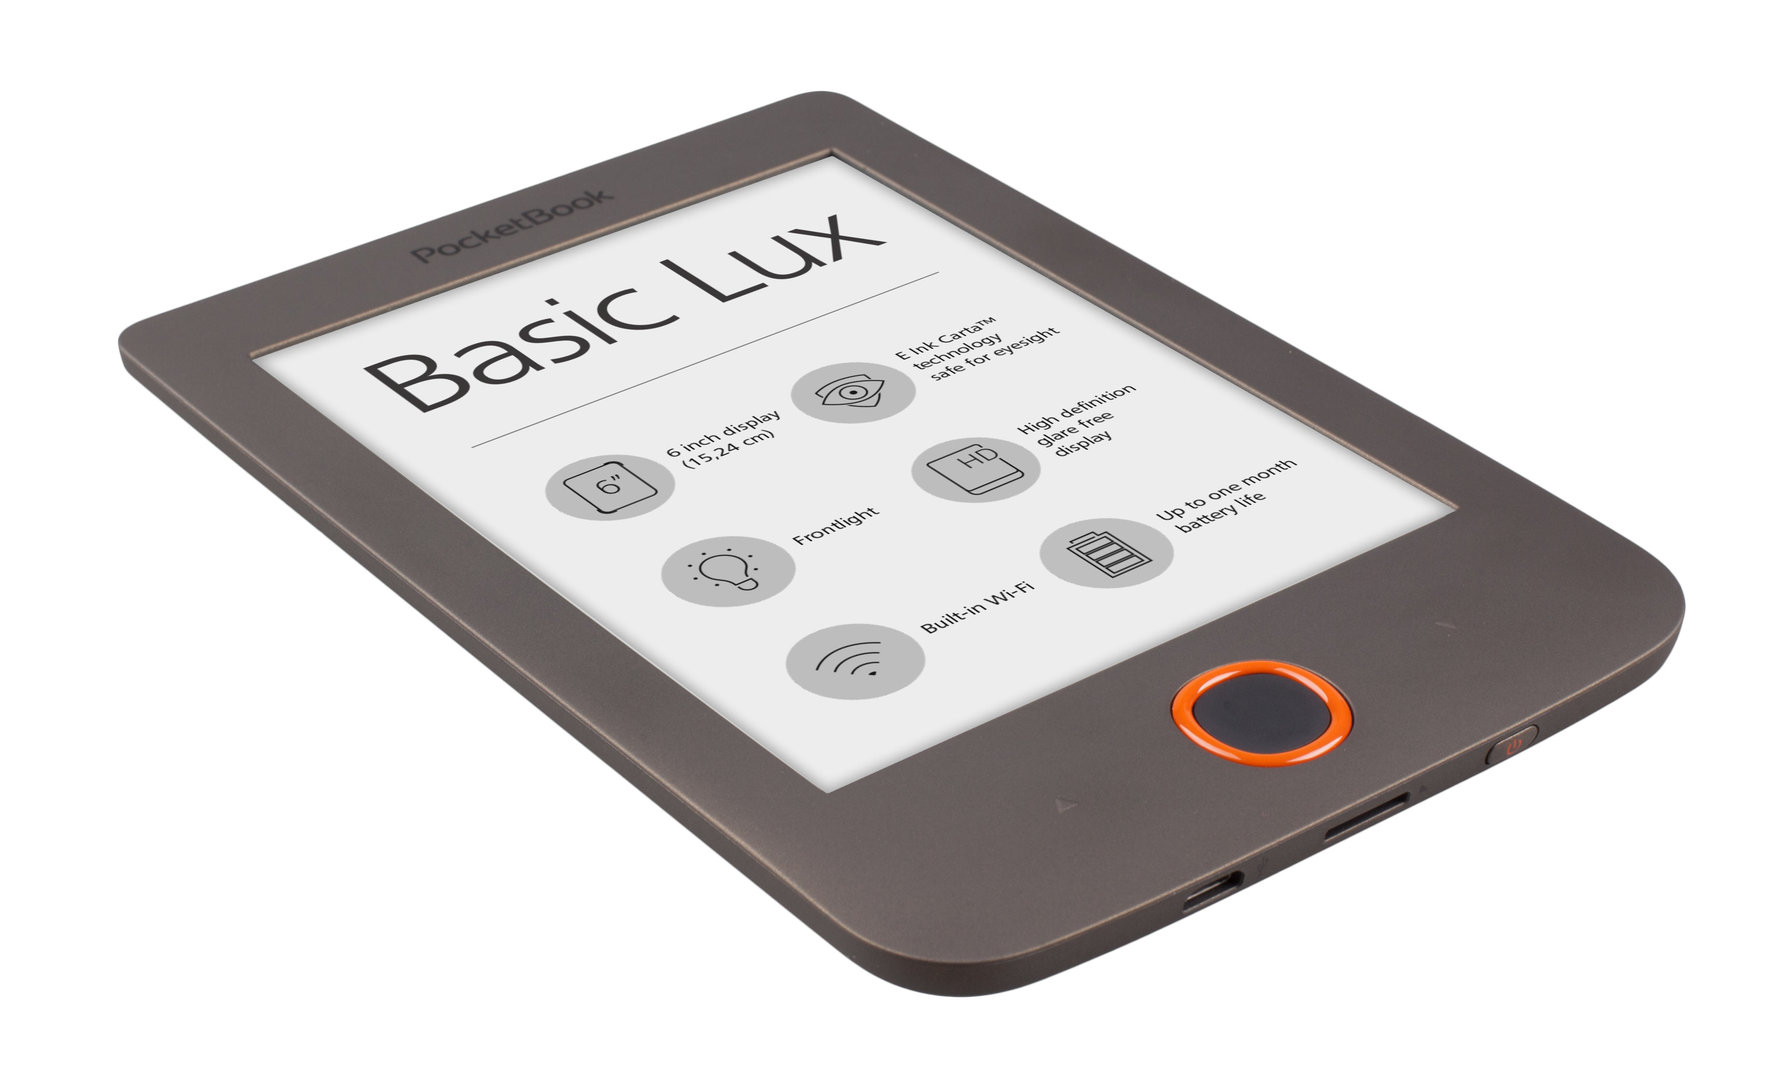 PocketBook Basic Lux